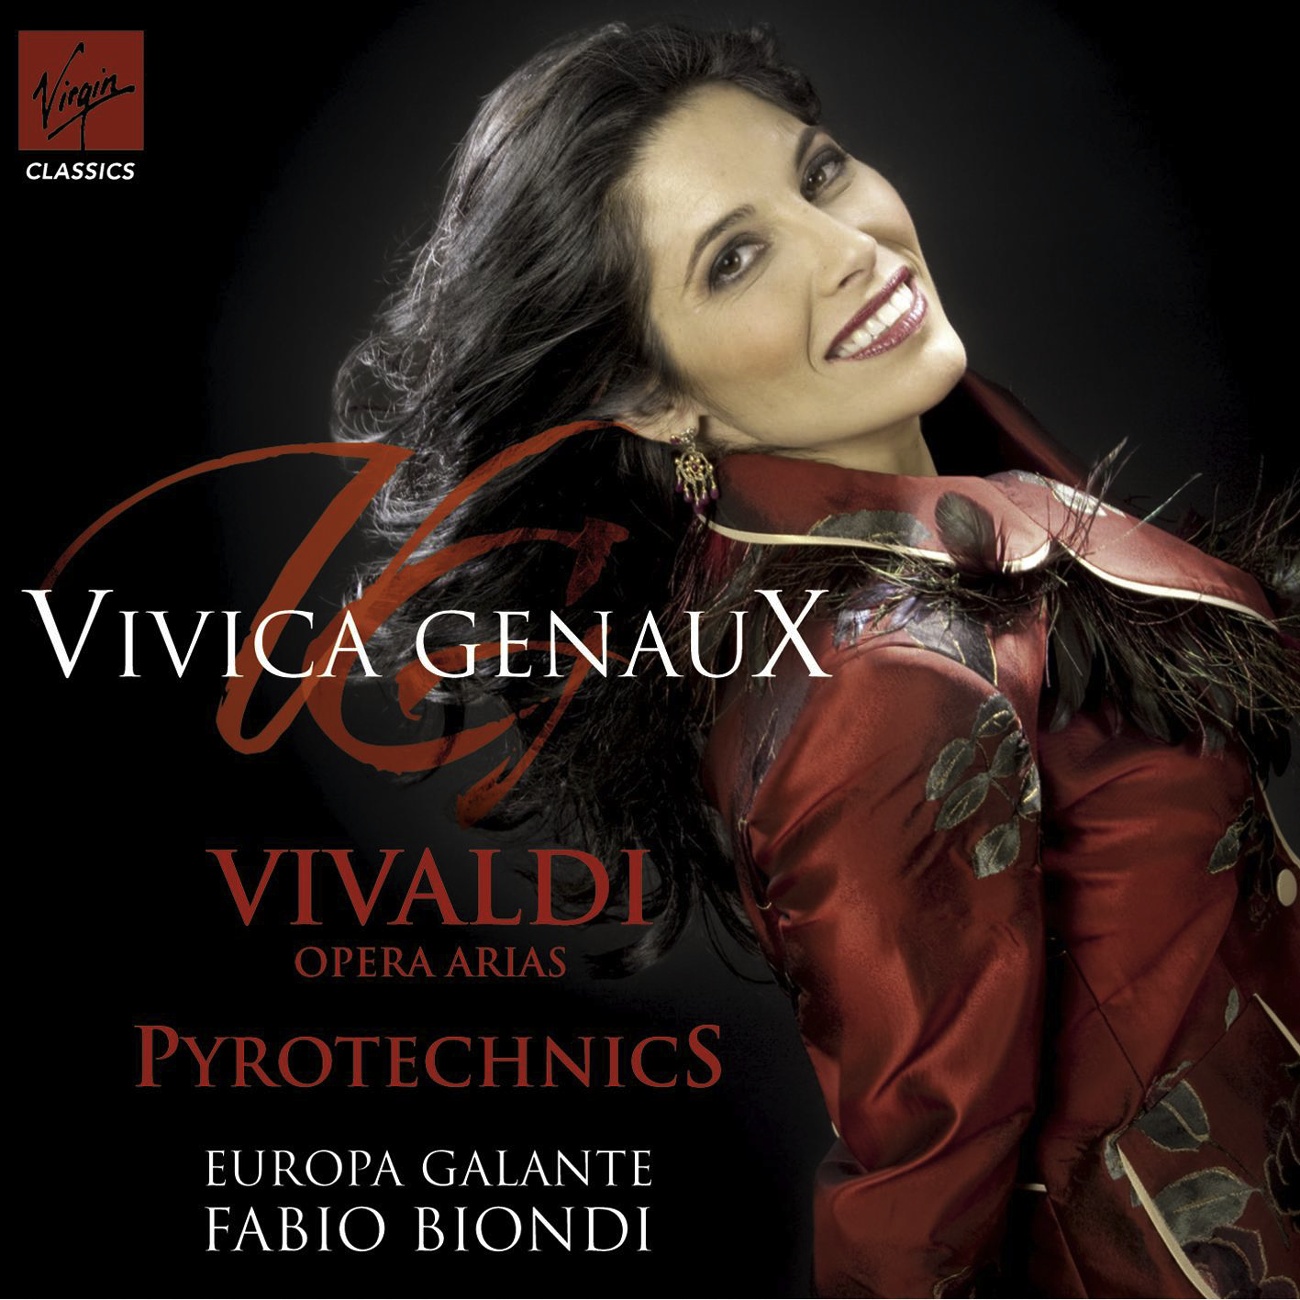 Vivaldi Pyrotechnics - Opera Arias